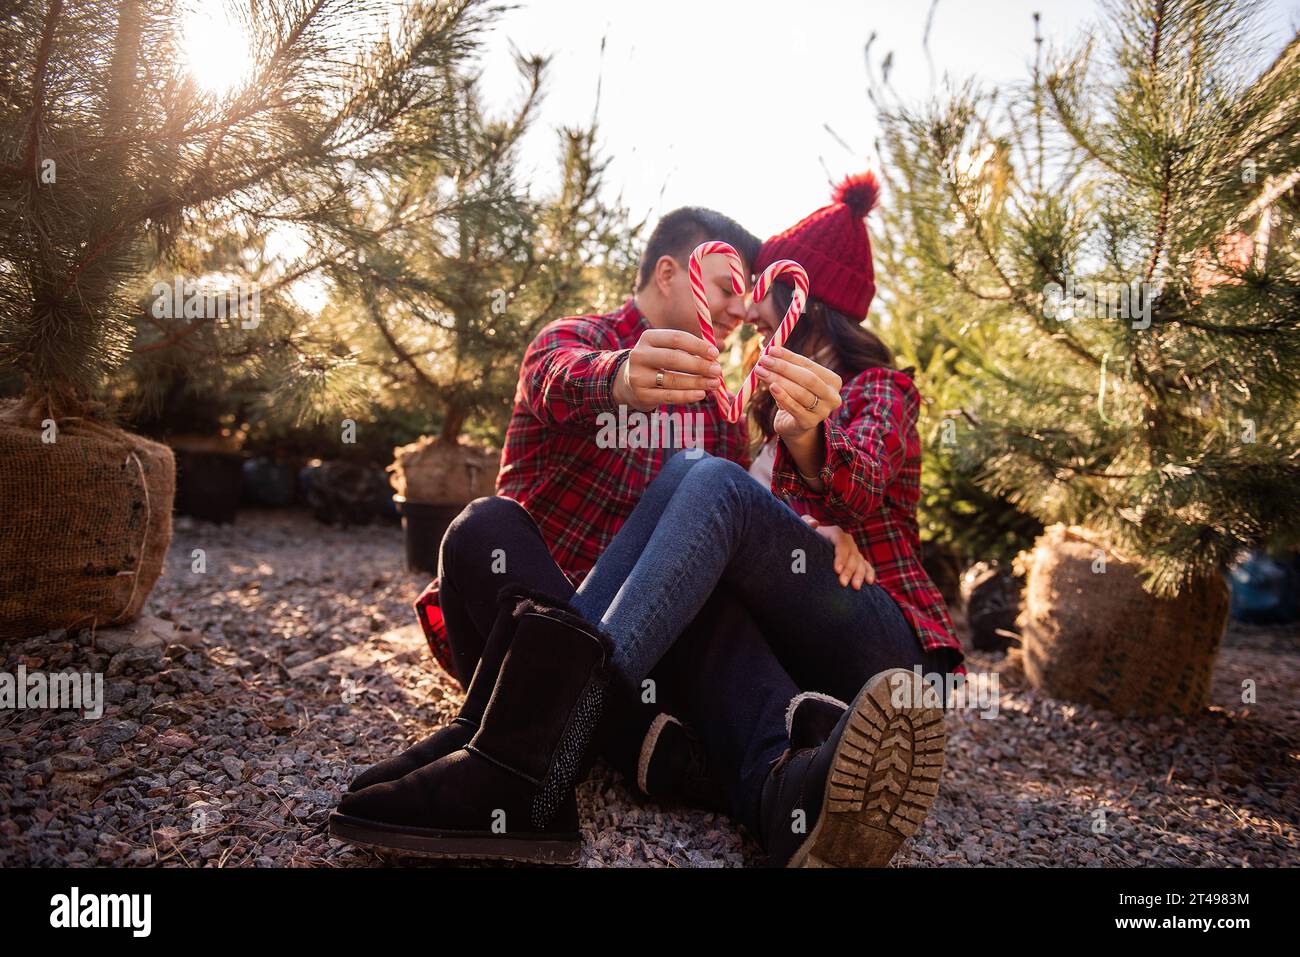 Couple amoureux en chemises à carreaux, chapeaux tricotés tiennent des cannes de bonbons en forme de cœur dans les mains près du marché vert des arbres de Noël. L'homme et la femme s'embrassent, rient, h. Banque D'Images